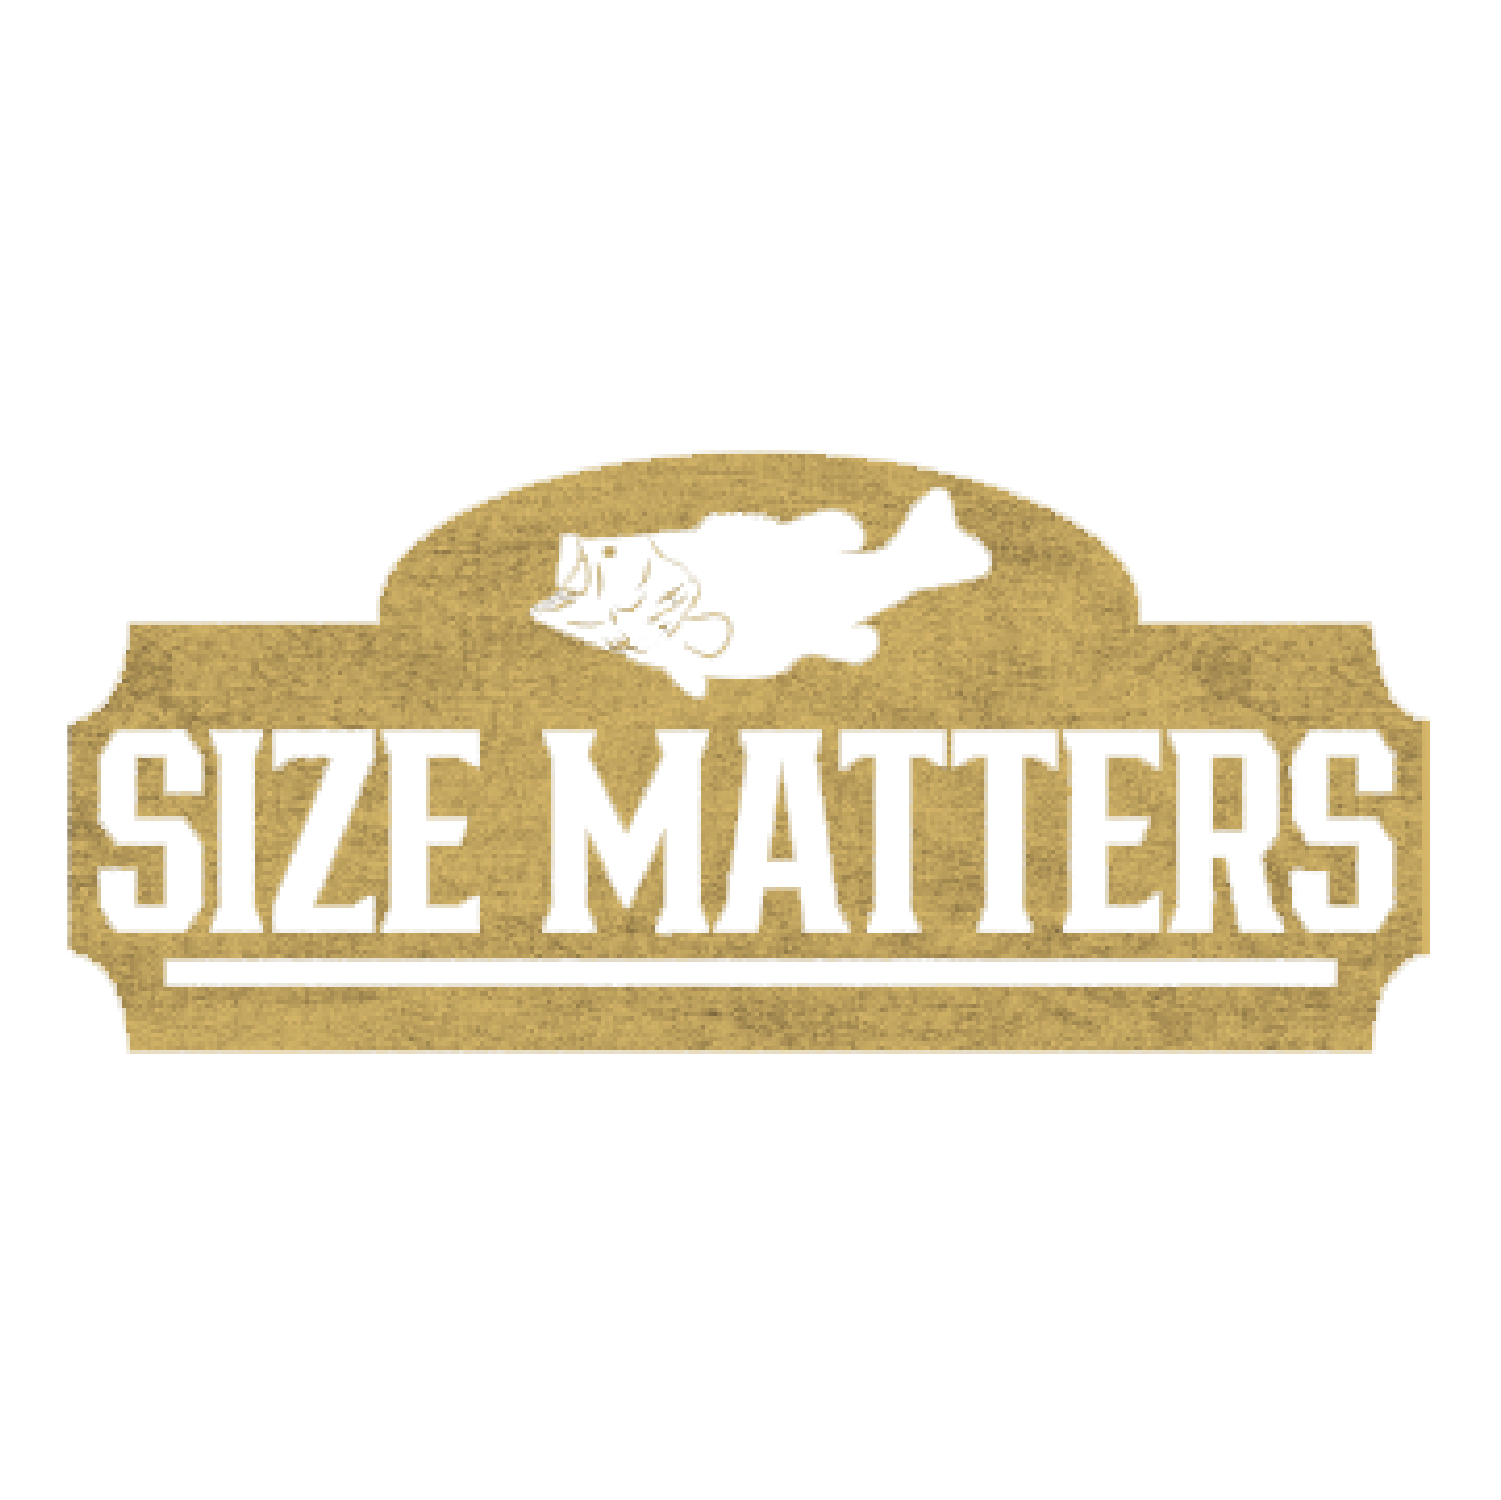 Size Matters 